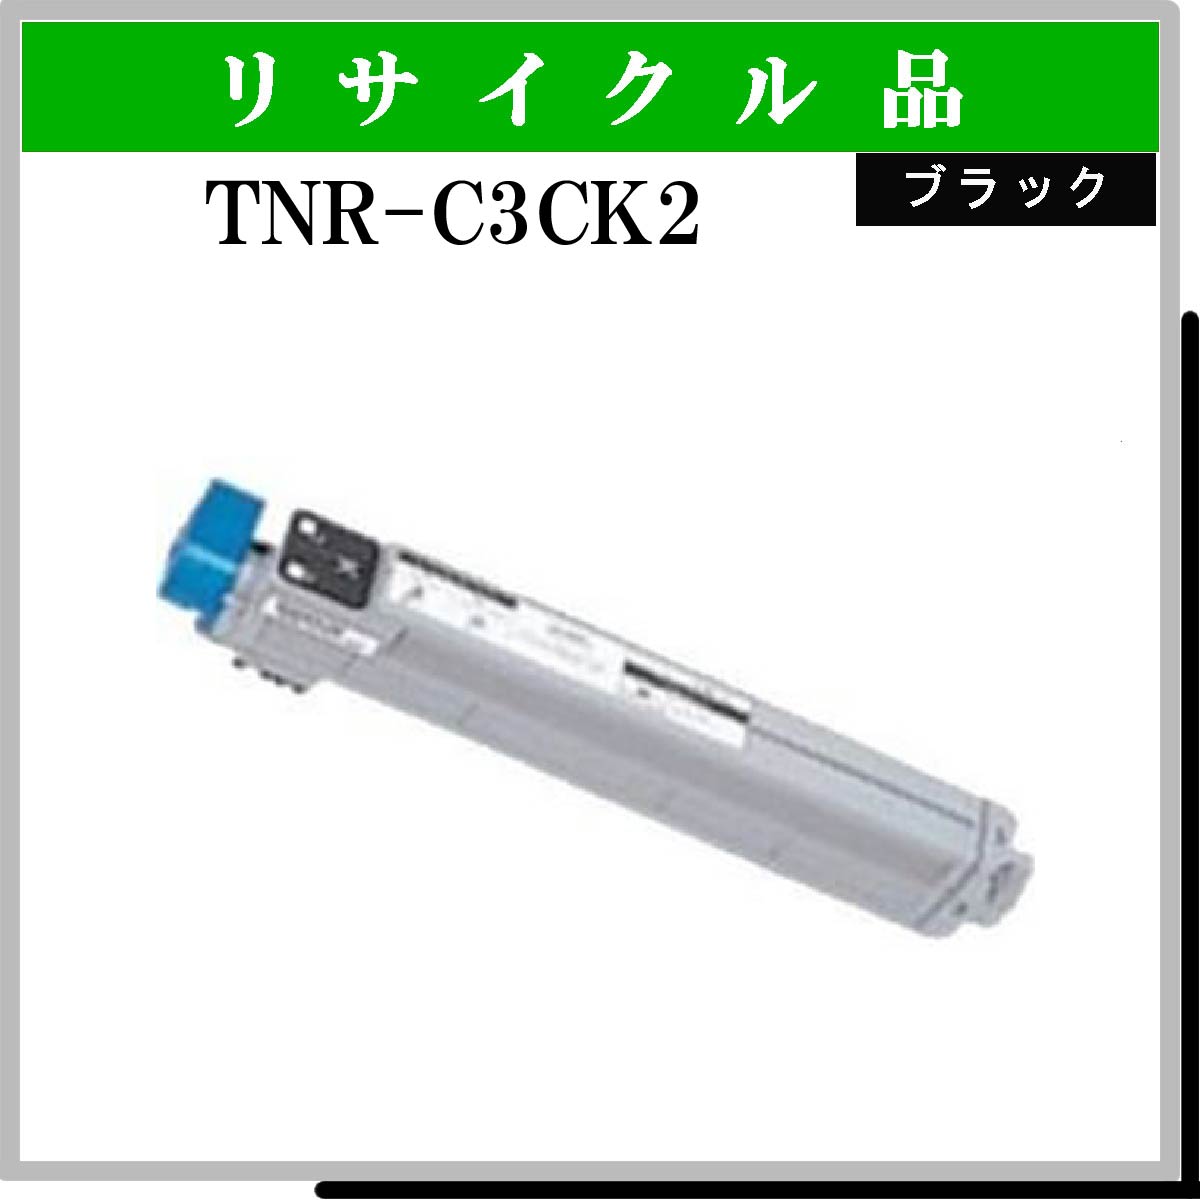 TNR-C3CK2